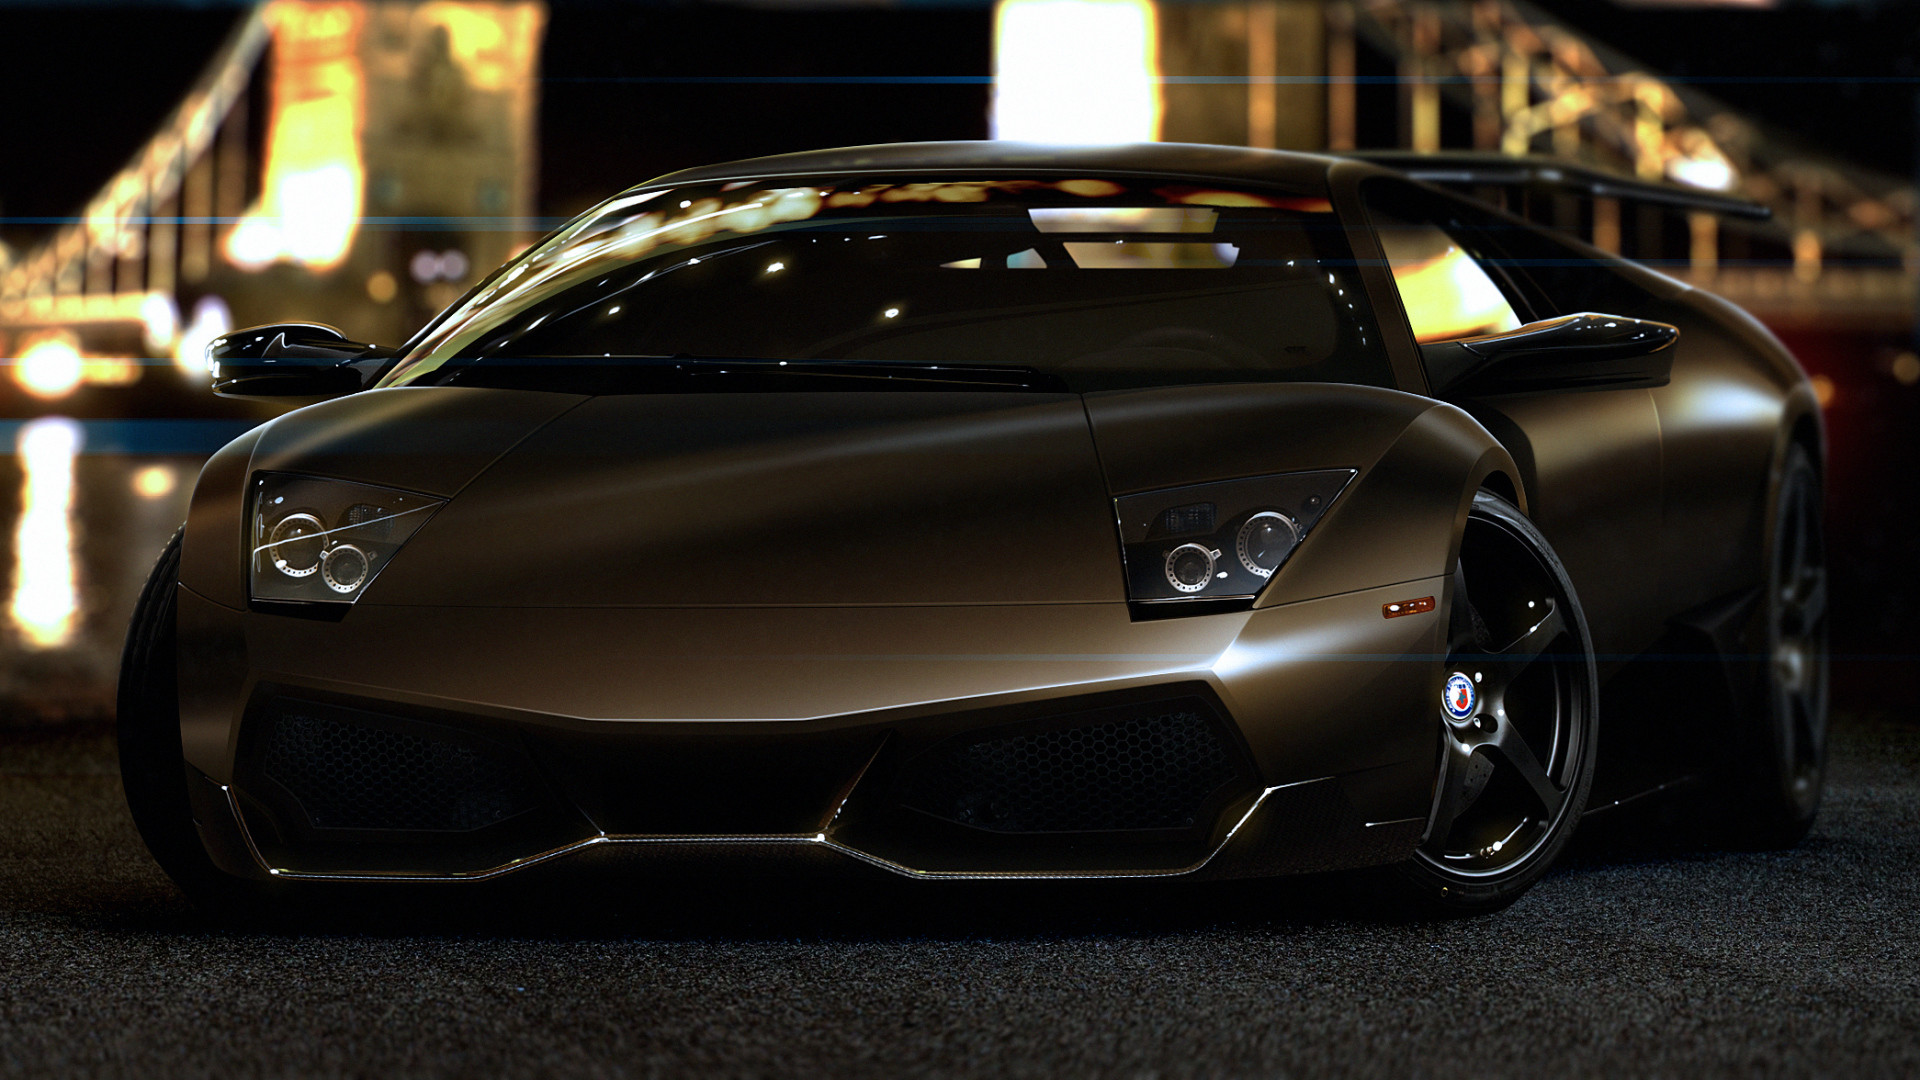 Lamborghini Wallpaper 1080p là bộ sưu tập hình nền đầy đủ nhất về Lamborghini với chất lượng hình ảnh siêu nét và chân thực. Hãy xem và tải về để trang trí màn hình của bạn ngay thôi!